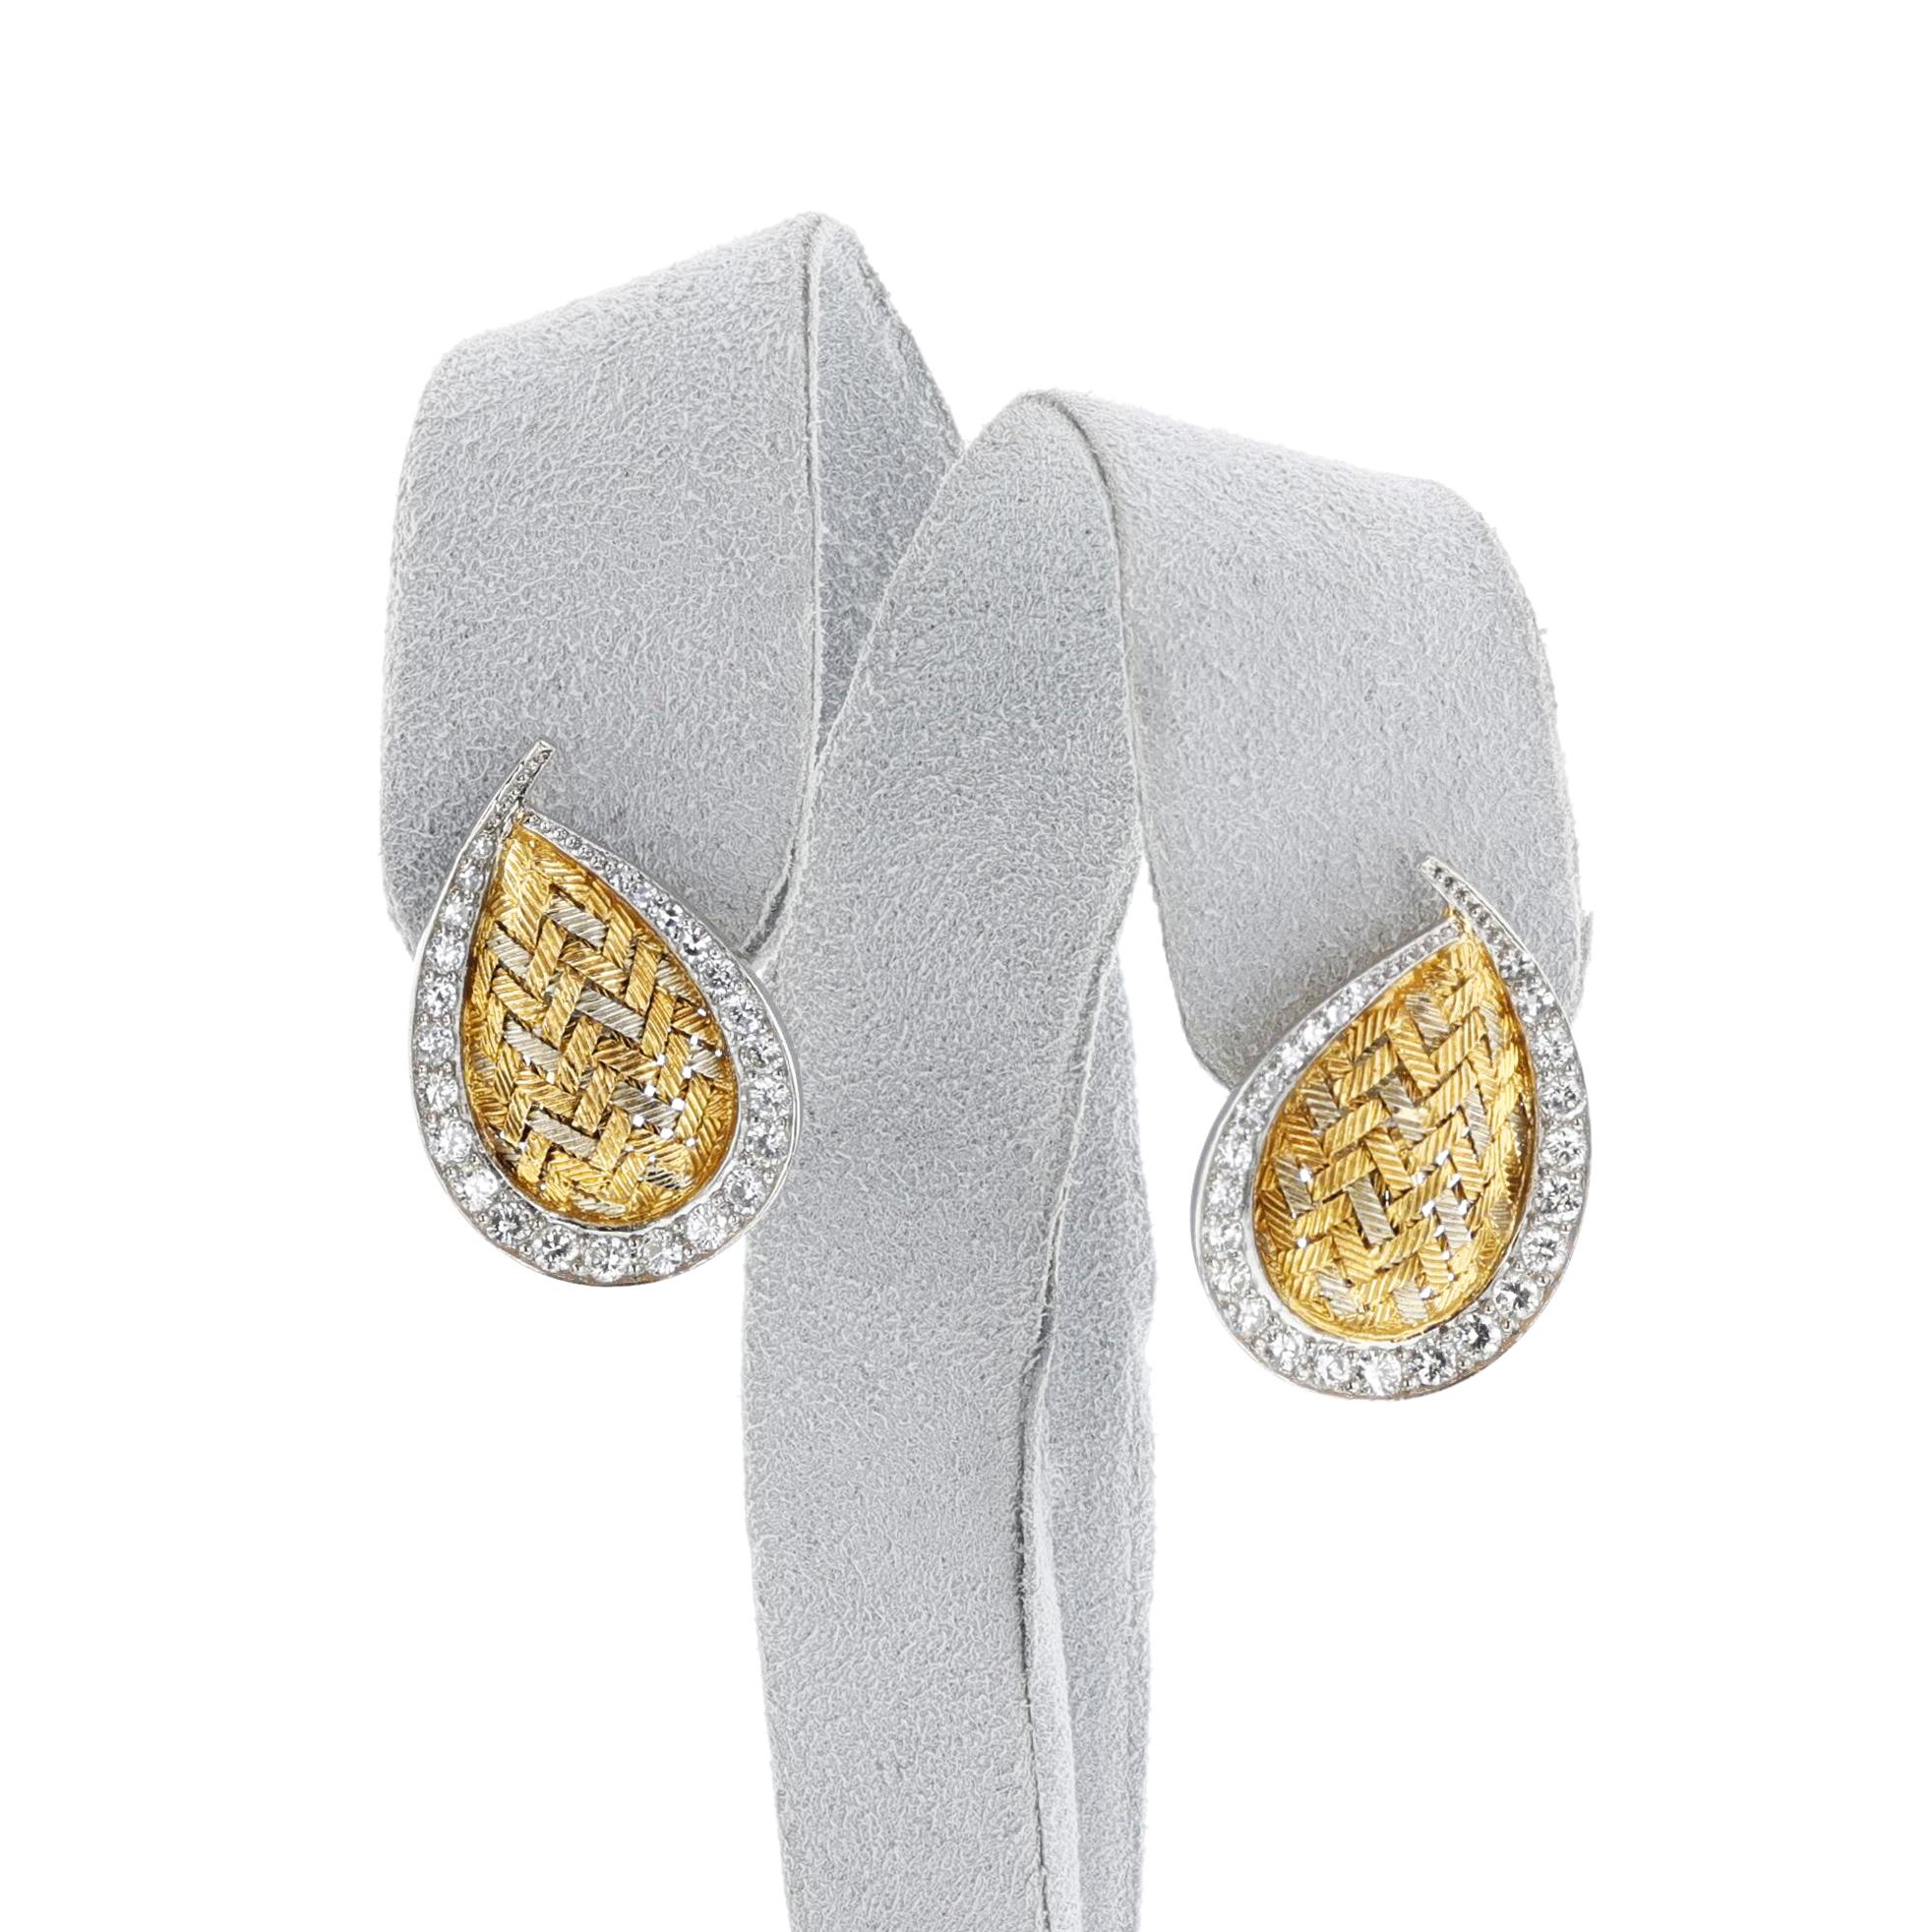 Boucles d'oreilles feuilles en forme de poire en or 18 carats et diamants de Merrin France. Le poids total est de 13,3 grammes. La longueur est de 1 pouce.

SKU : 1482-AFEJPRT